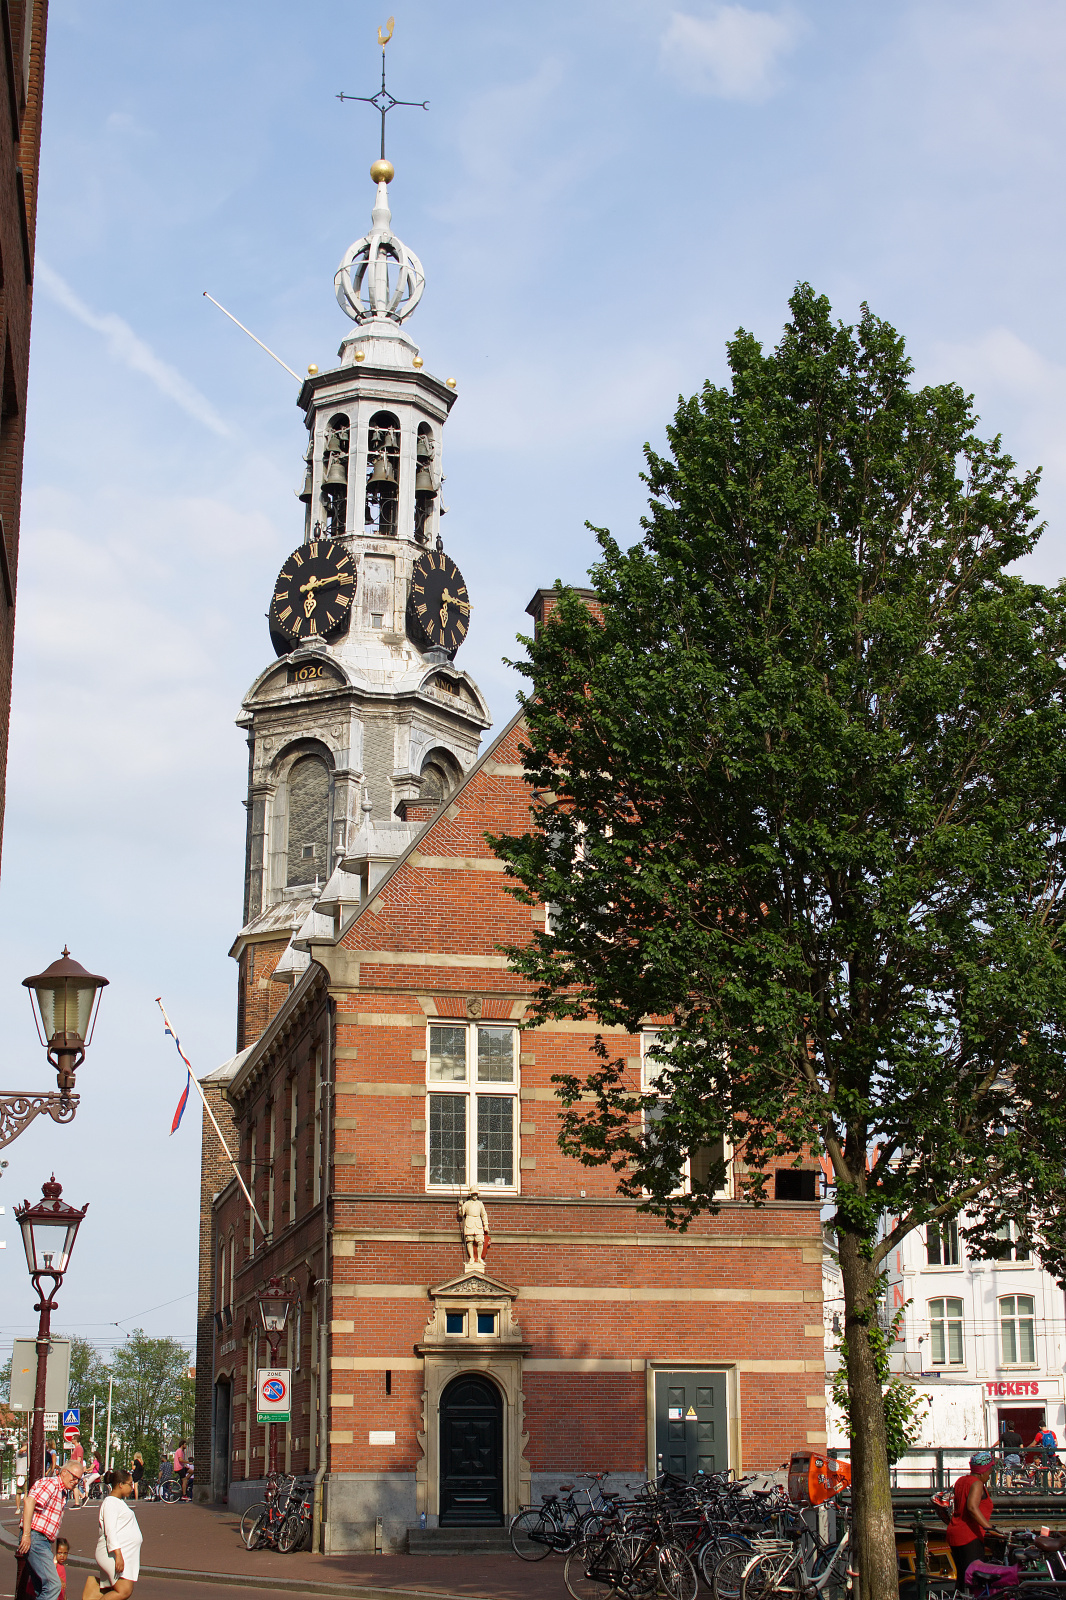 Munttoren - Mint Tower from Singel (Travels » Amsterdam)